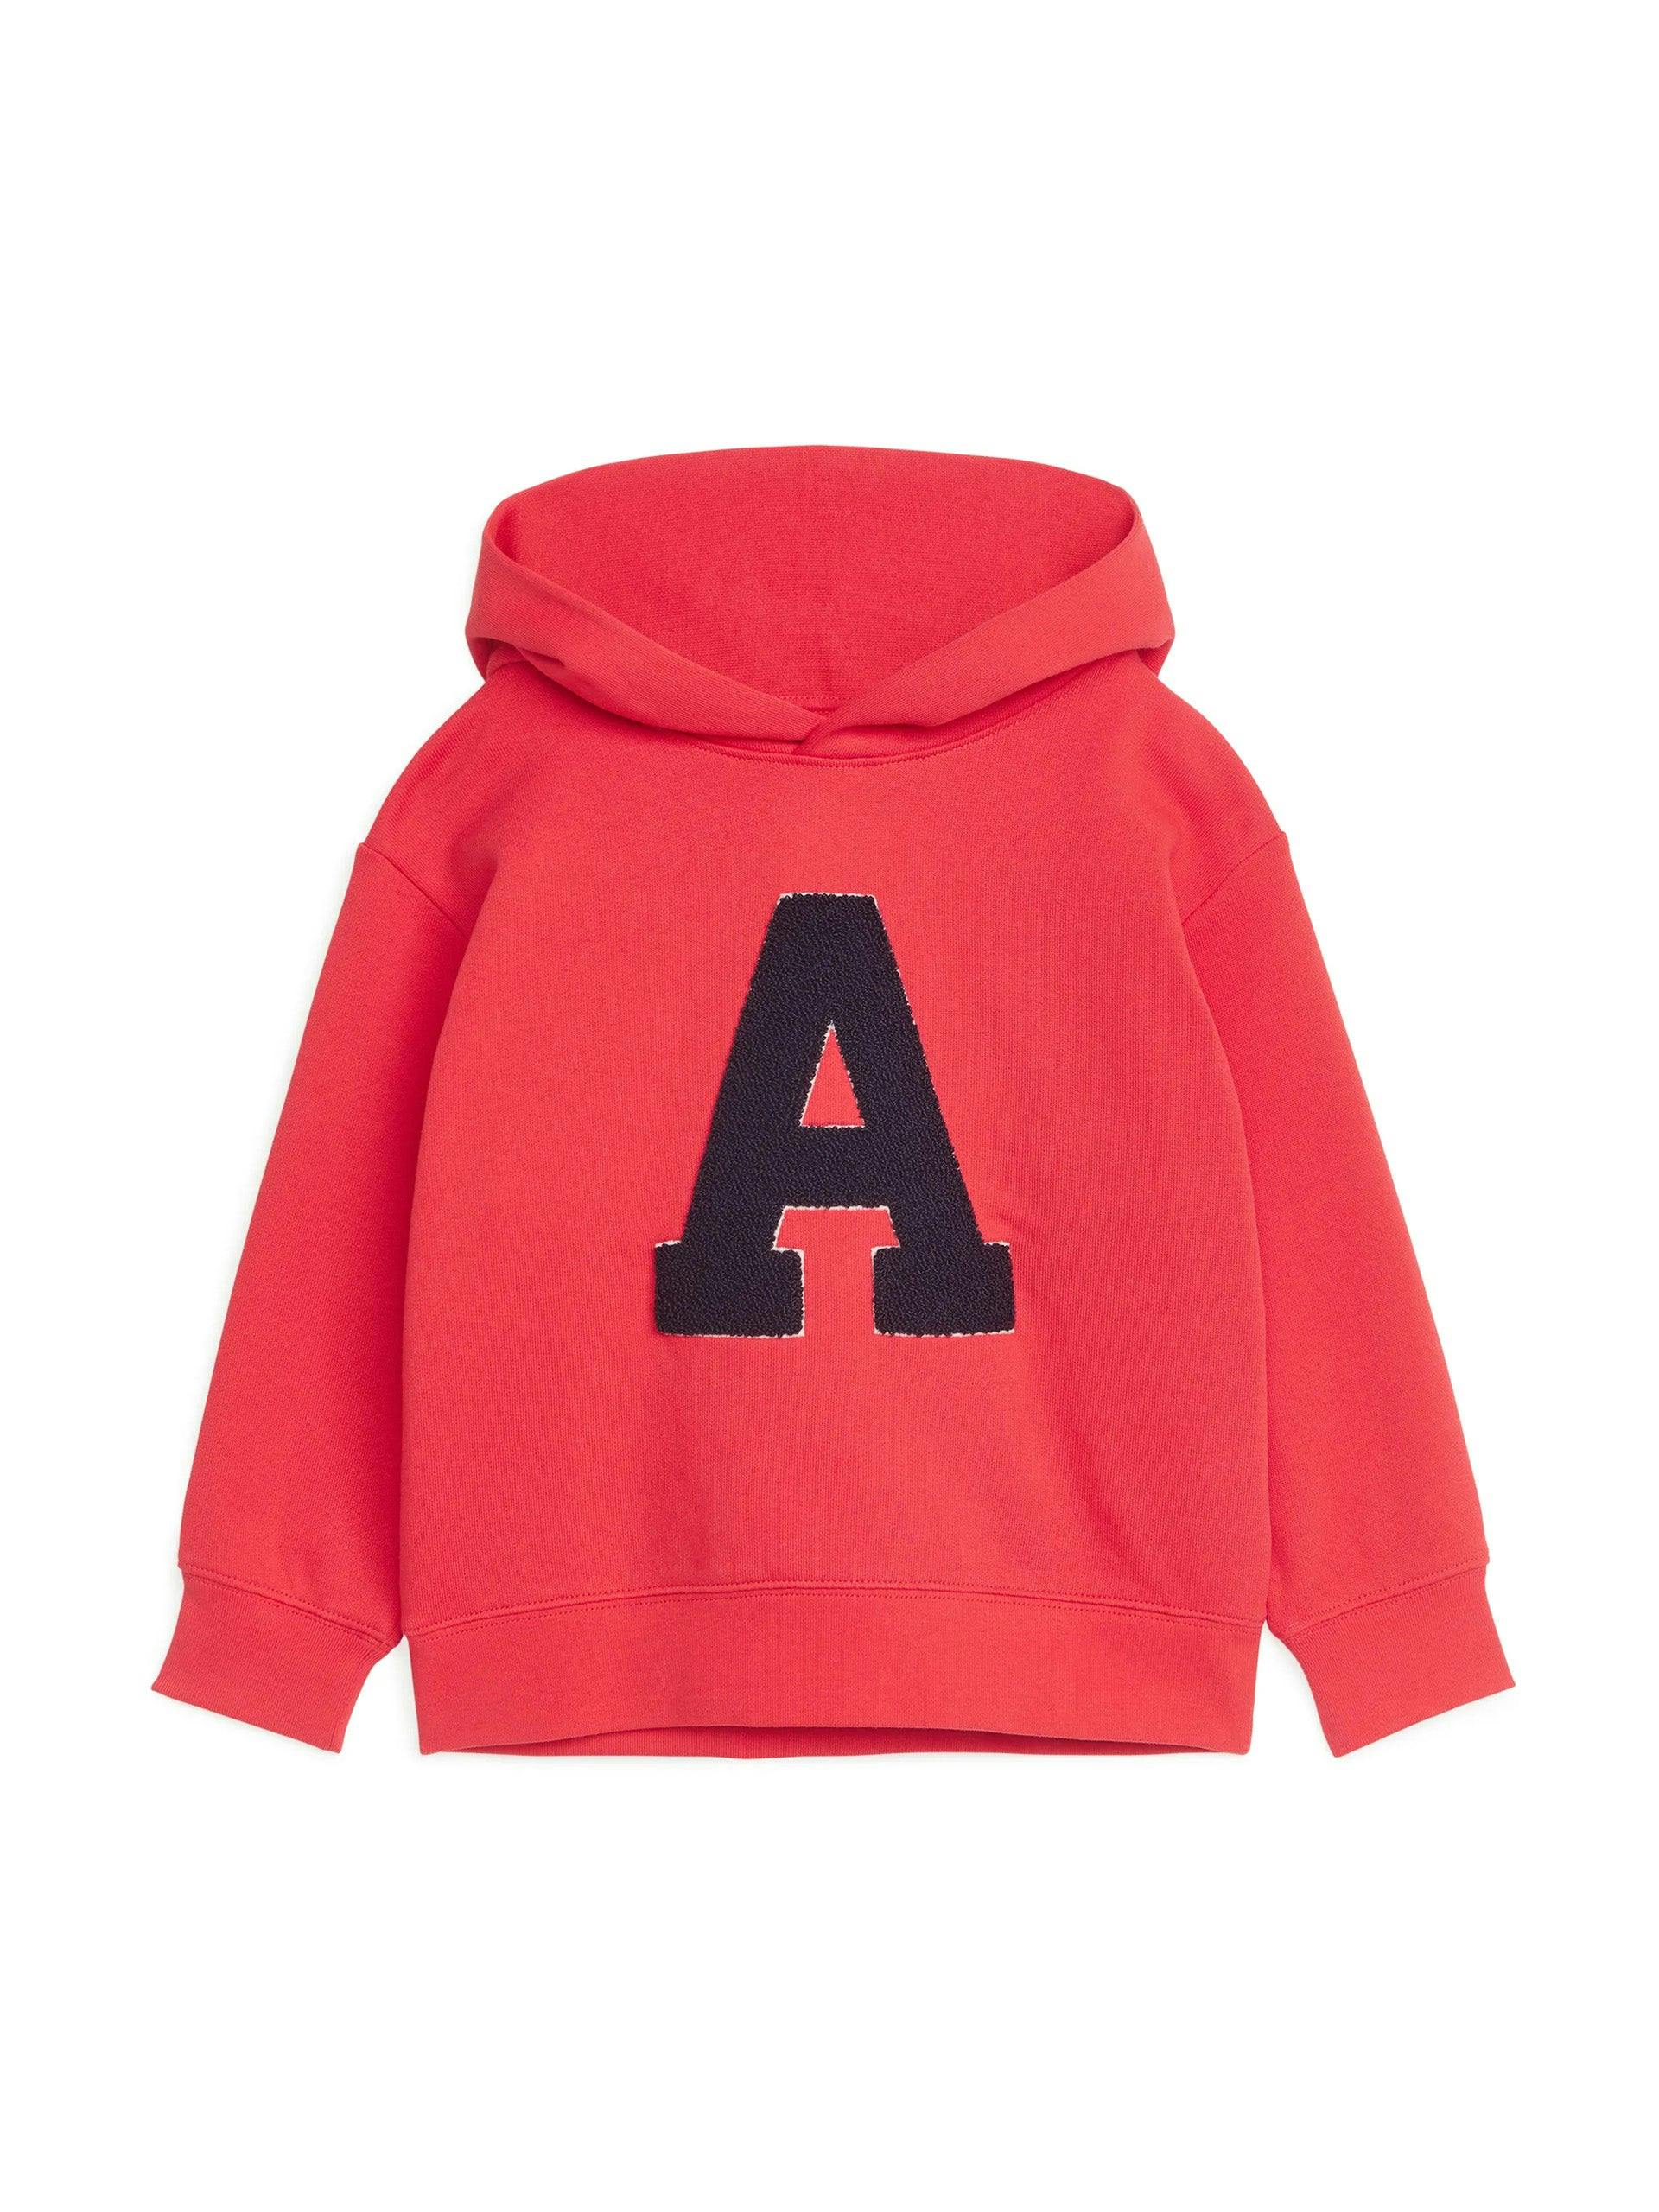 Red varsity hoodie